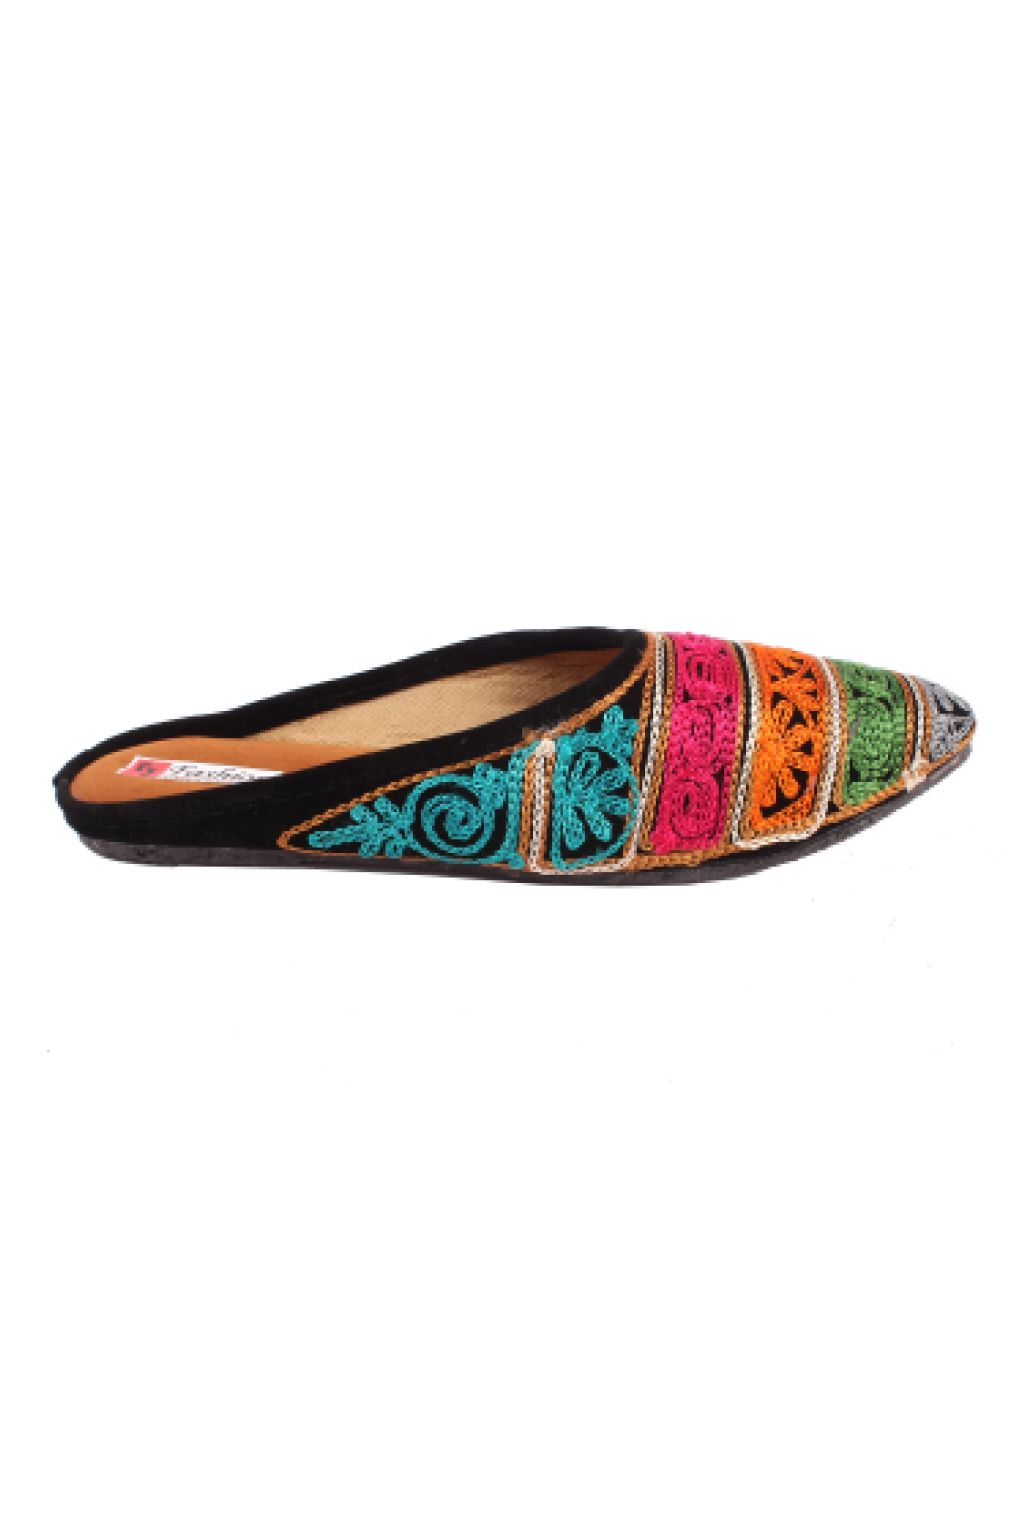 Buy Rajasthani Jaipuri Work Kolhapuri Ethnic Womens Girls Ladies SLI  Fashionable Sandals Online In India At Discounted Prices